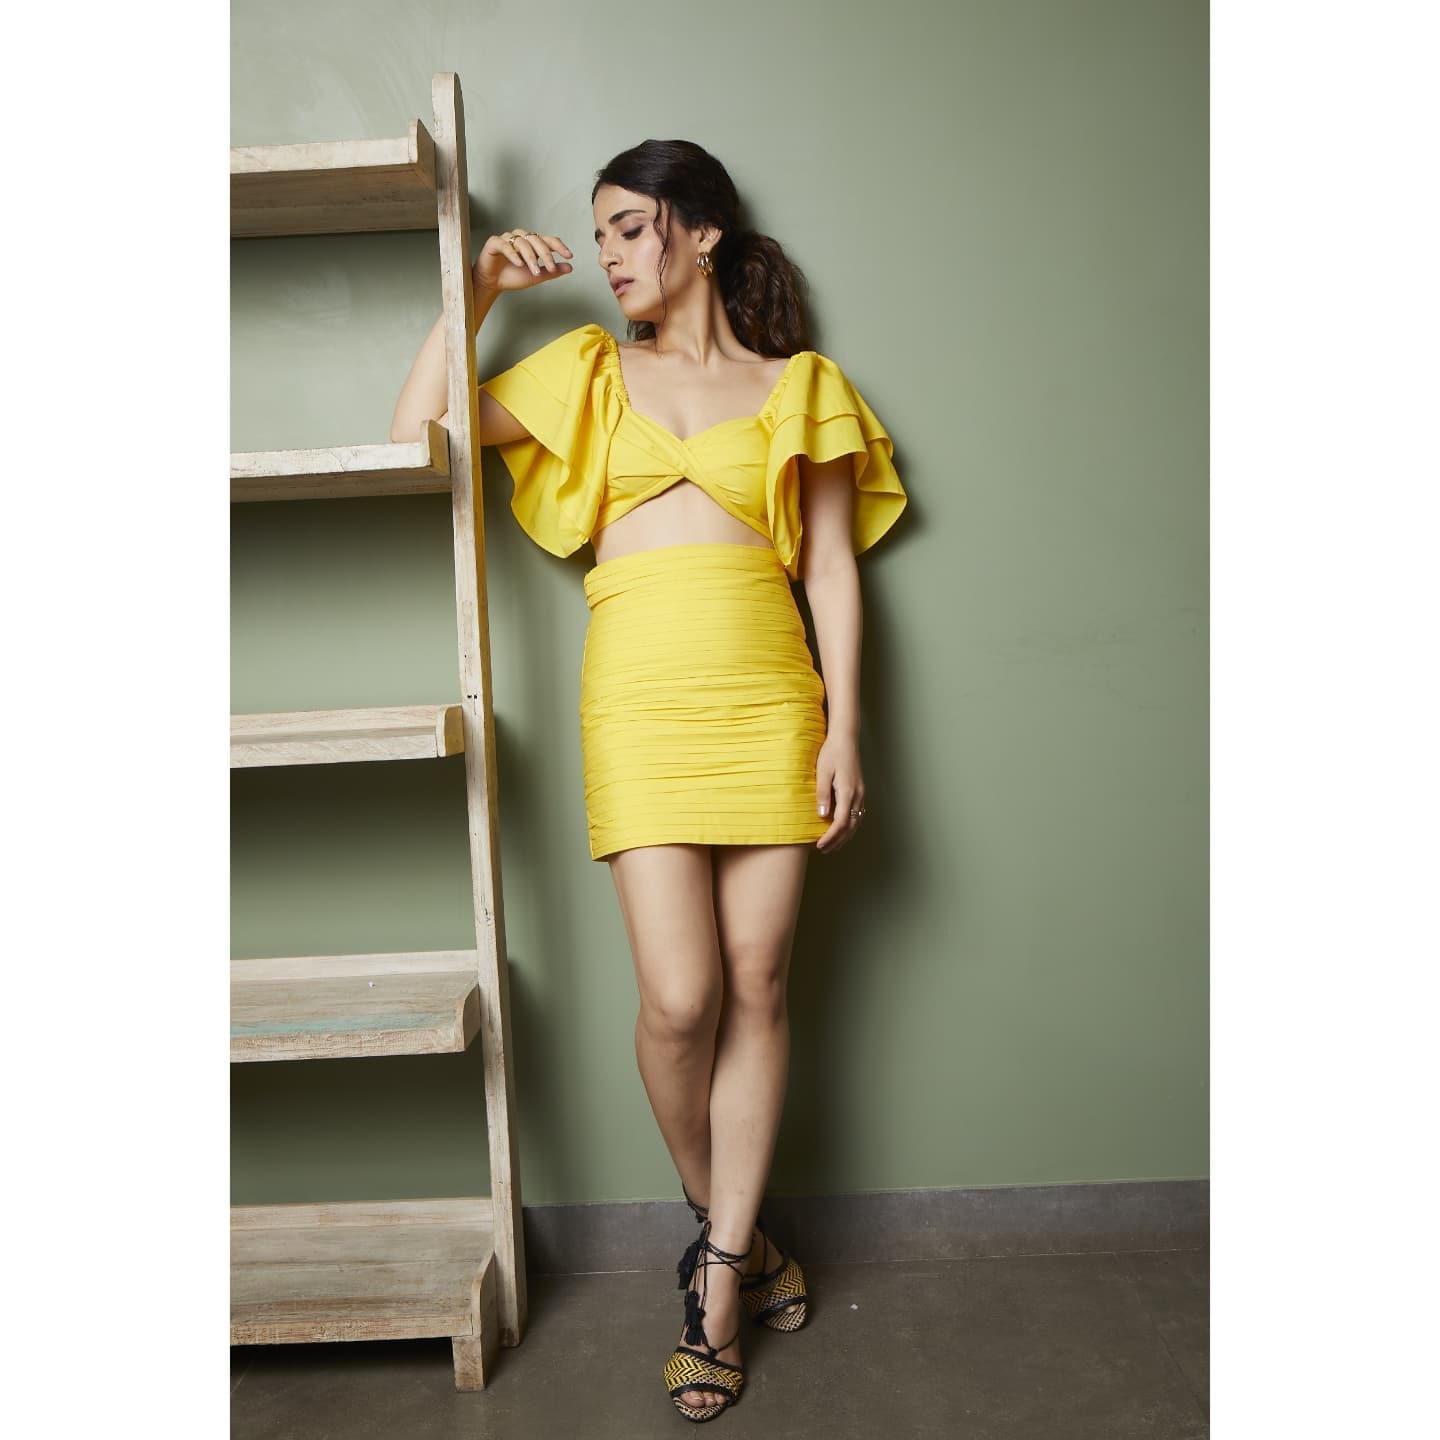 Radhika Madan looks sexy in the yellow cutout dress